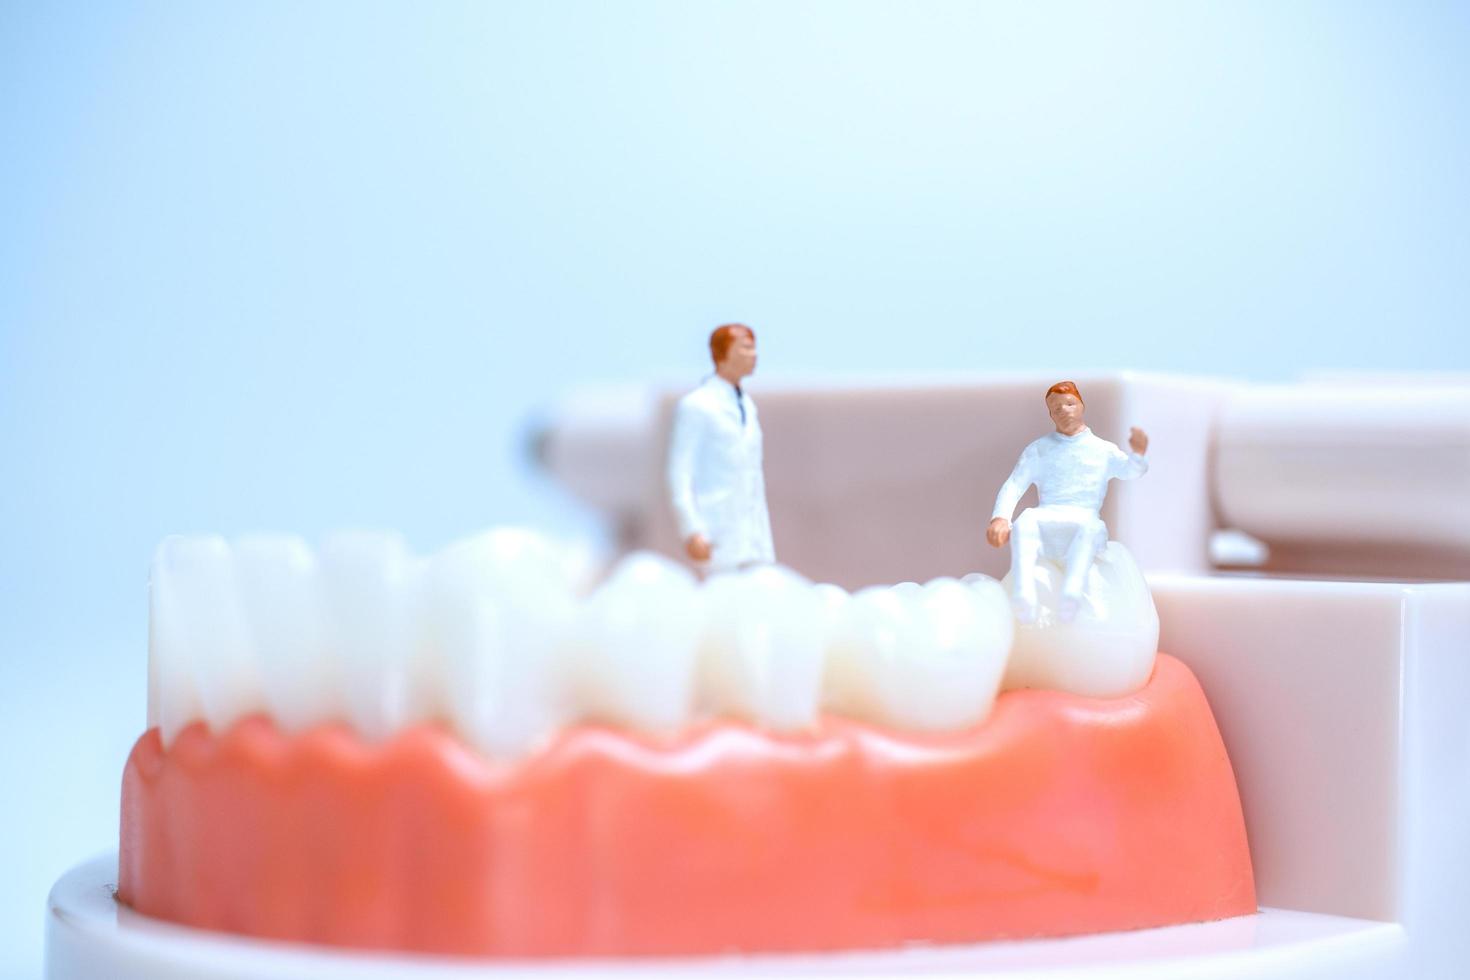 Dentistes miniatures à l'intérieur du modèle de dents humaines avec des gencives photo